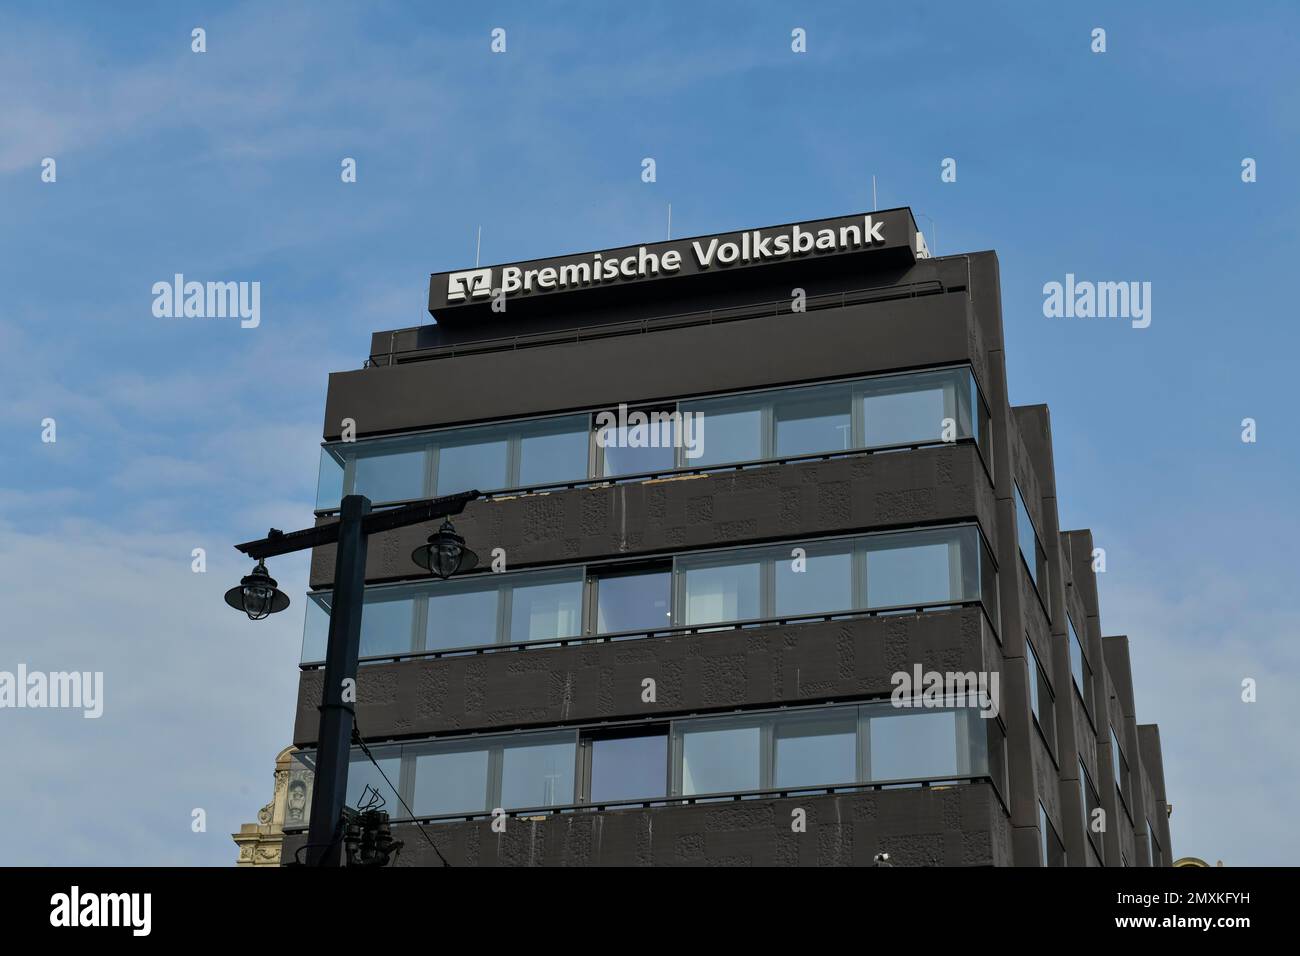 Bremische Volksbank, Domsheide, Bremen, Germany, Europe Stock Photo